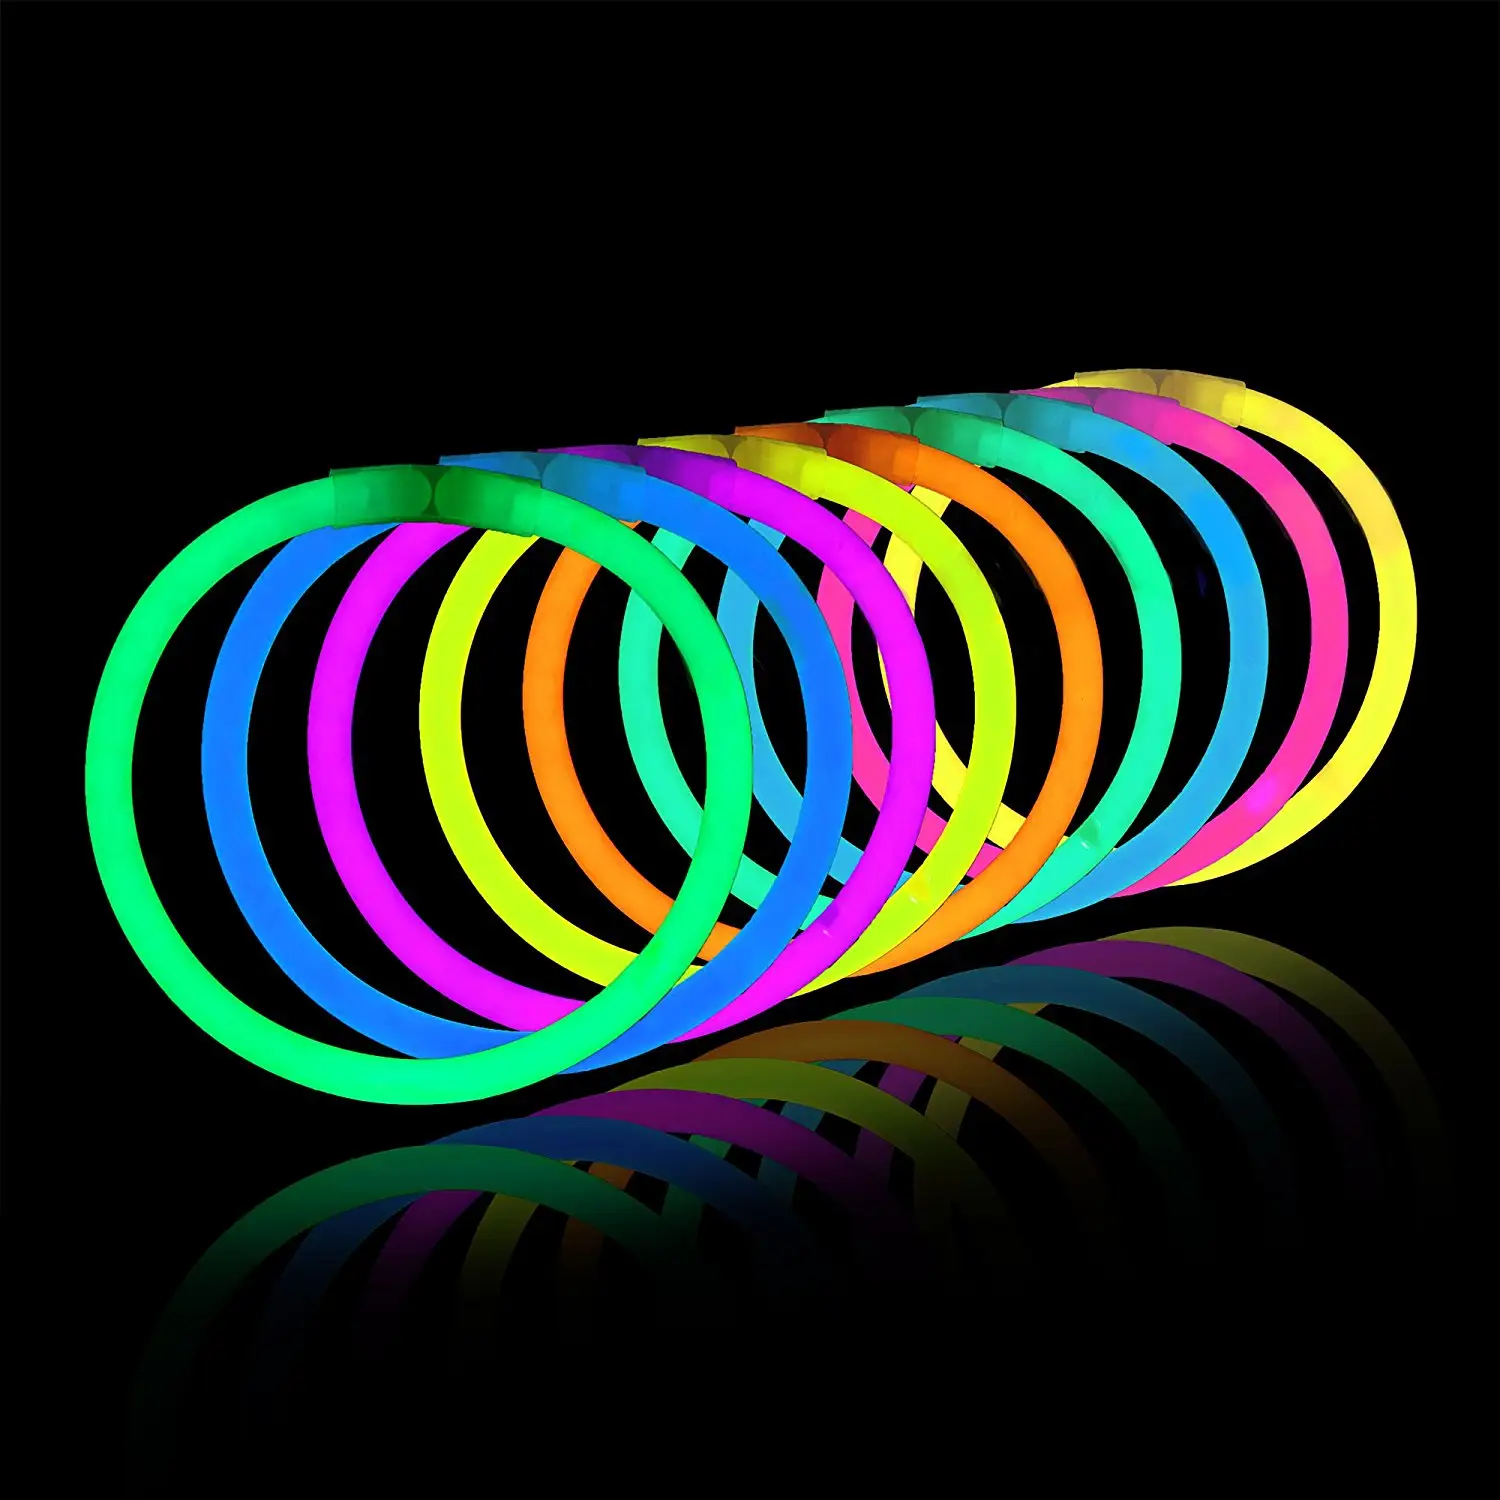 Wholesale Light up toys glow stick bracelets for party and event light bracelet